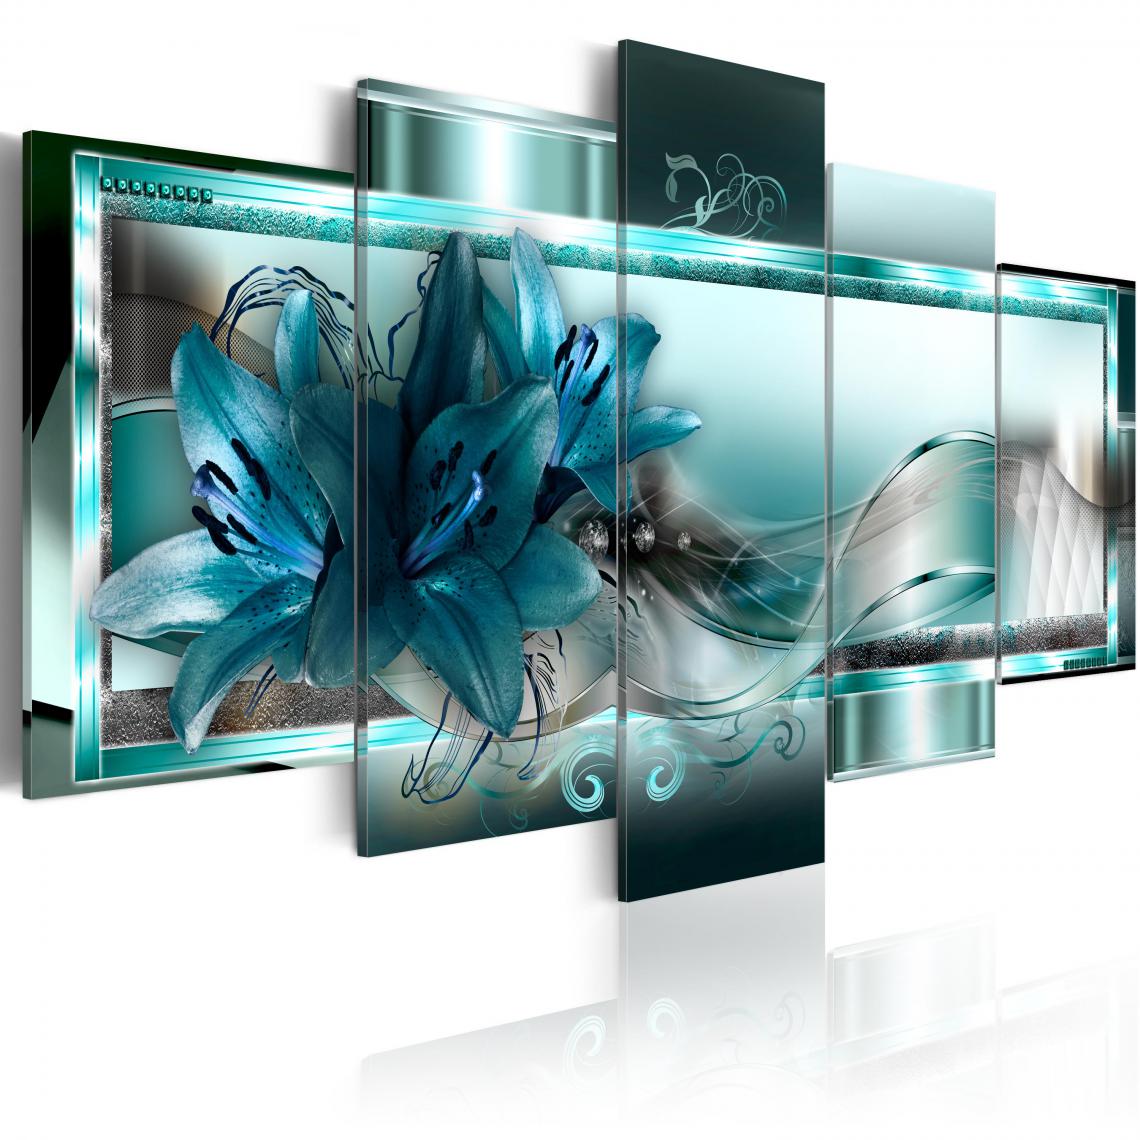 Decoshop26 - Tableau sur toile en 5 panneaux décoration murale image imprimée cadre en bois à suspendre Lys bleu ciel 100x50 cm 11_0000885 - Tableaux, peintures